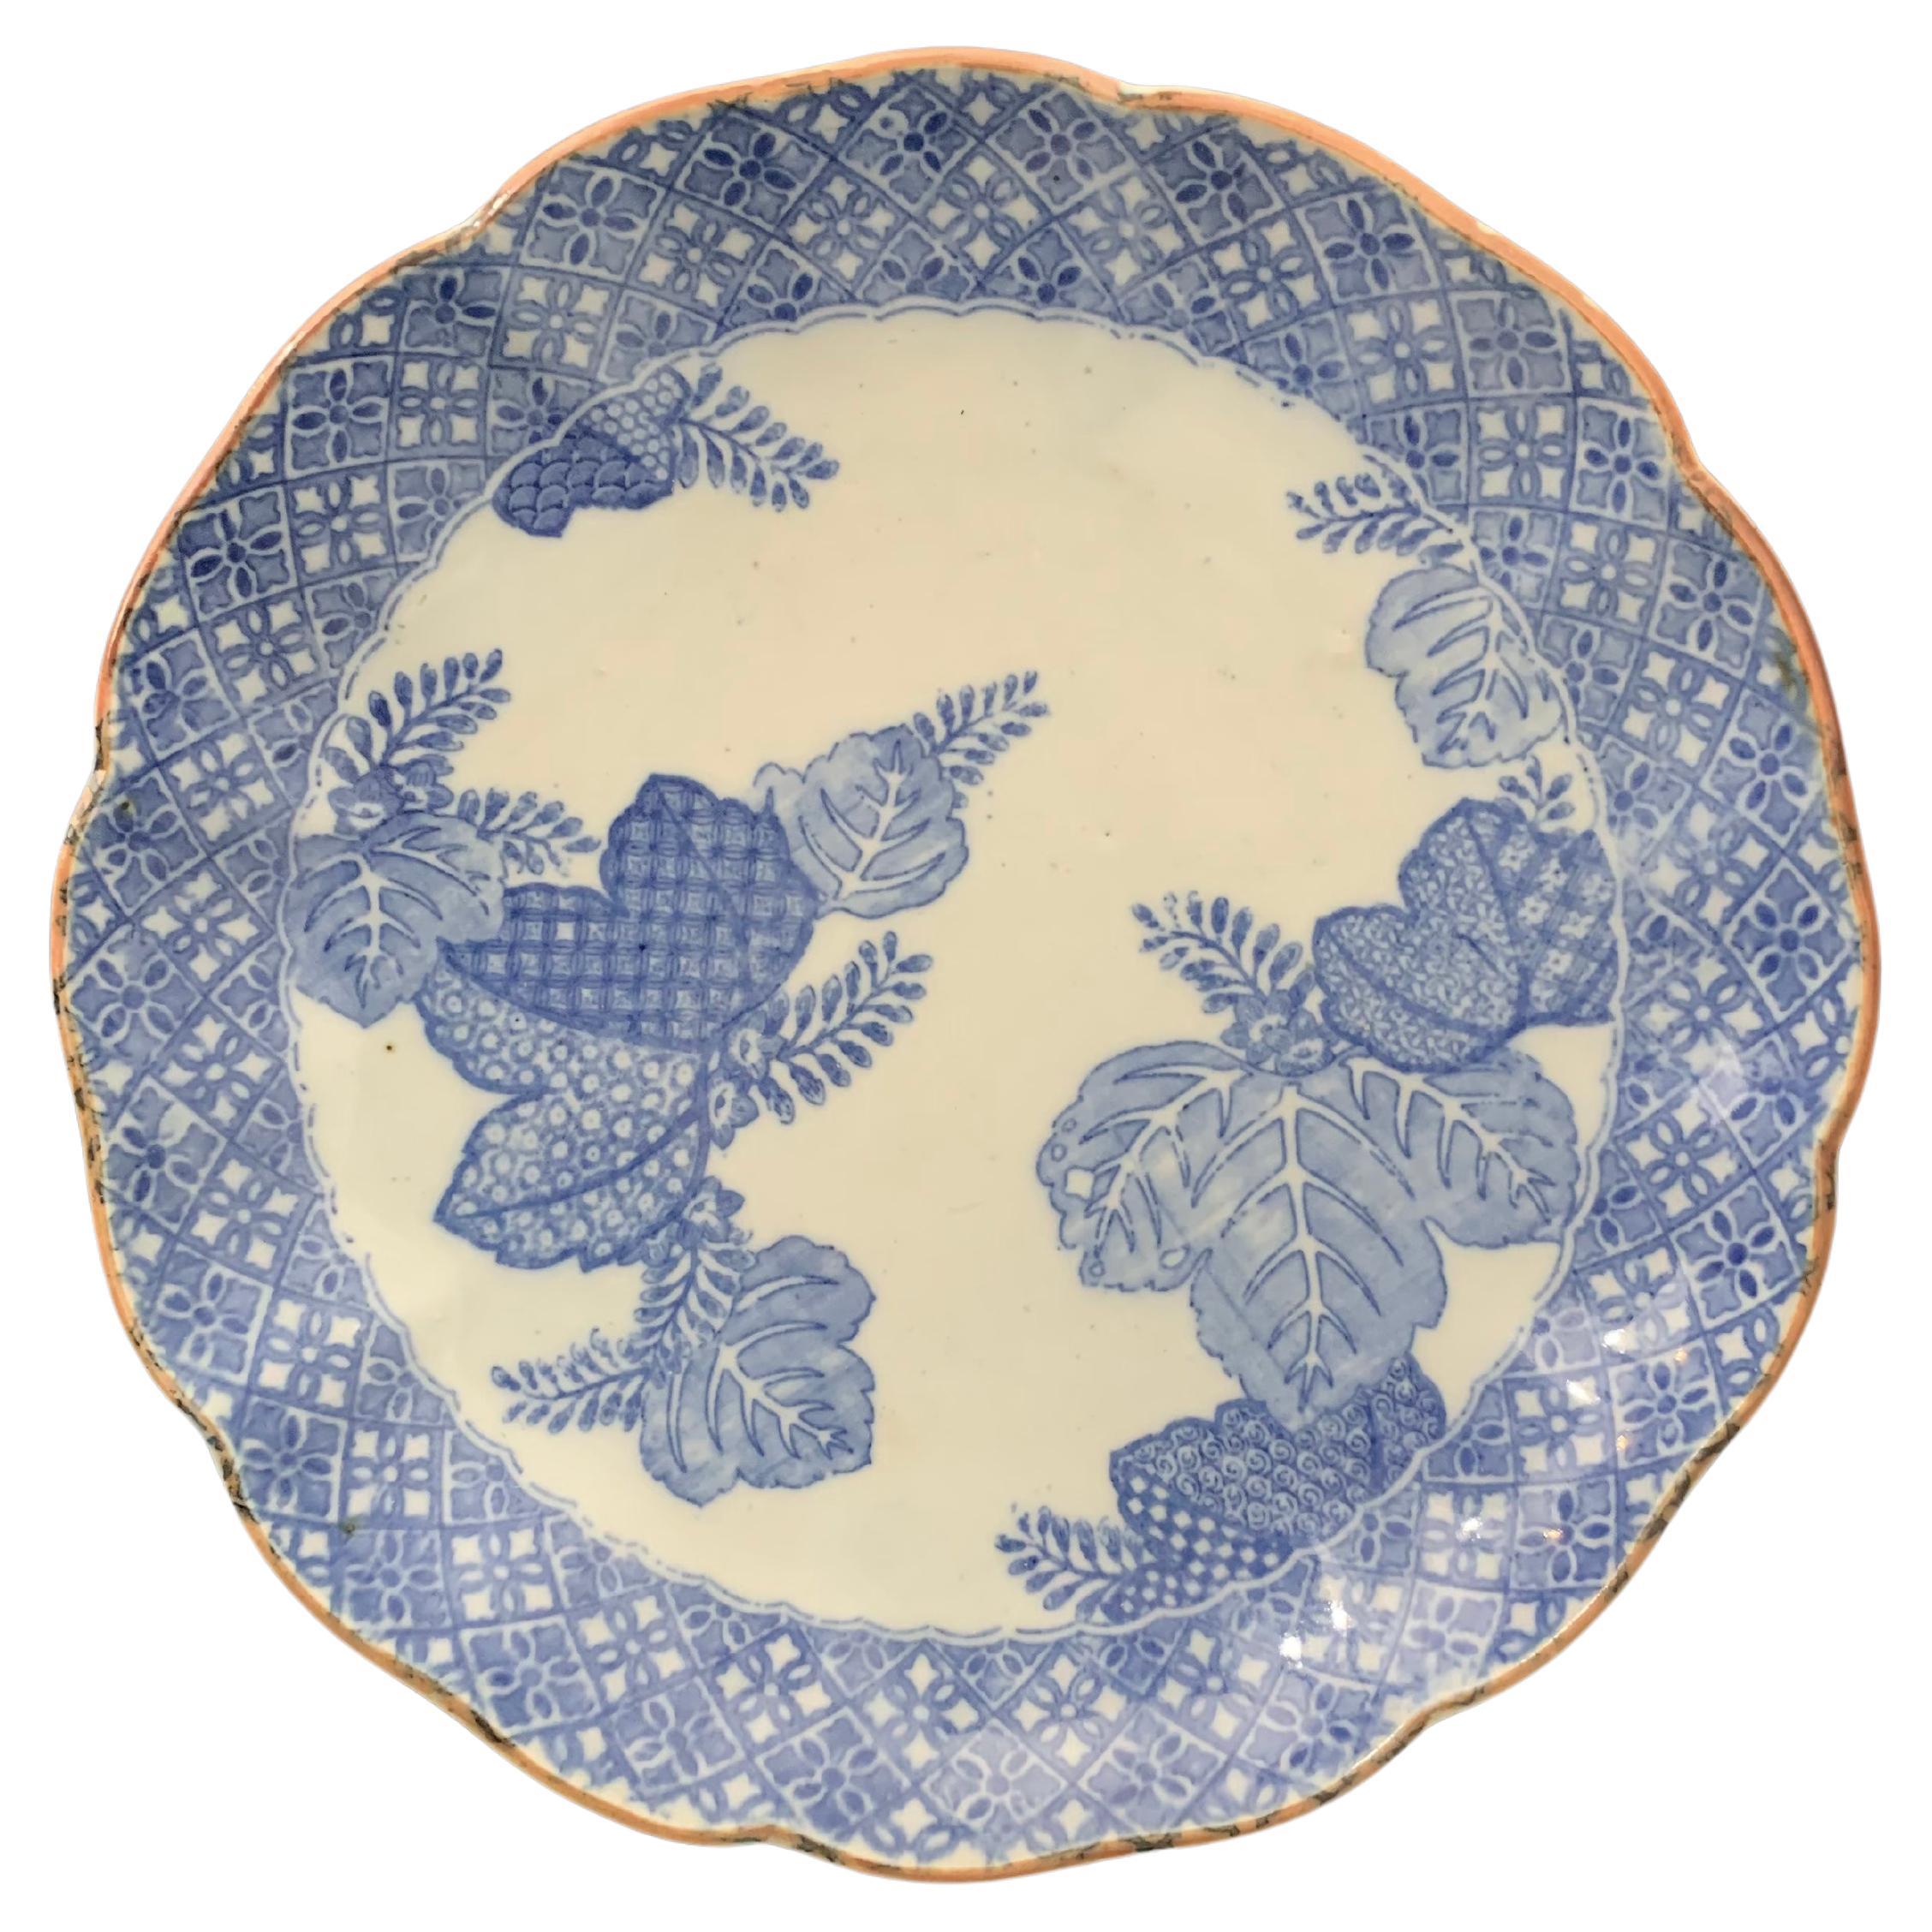 Chinesischer Suppenteller, inspiriert von der Blue Family India Compagny, Mitte des 19. Jahrhunderts